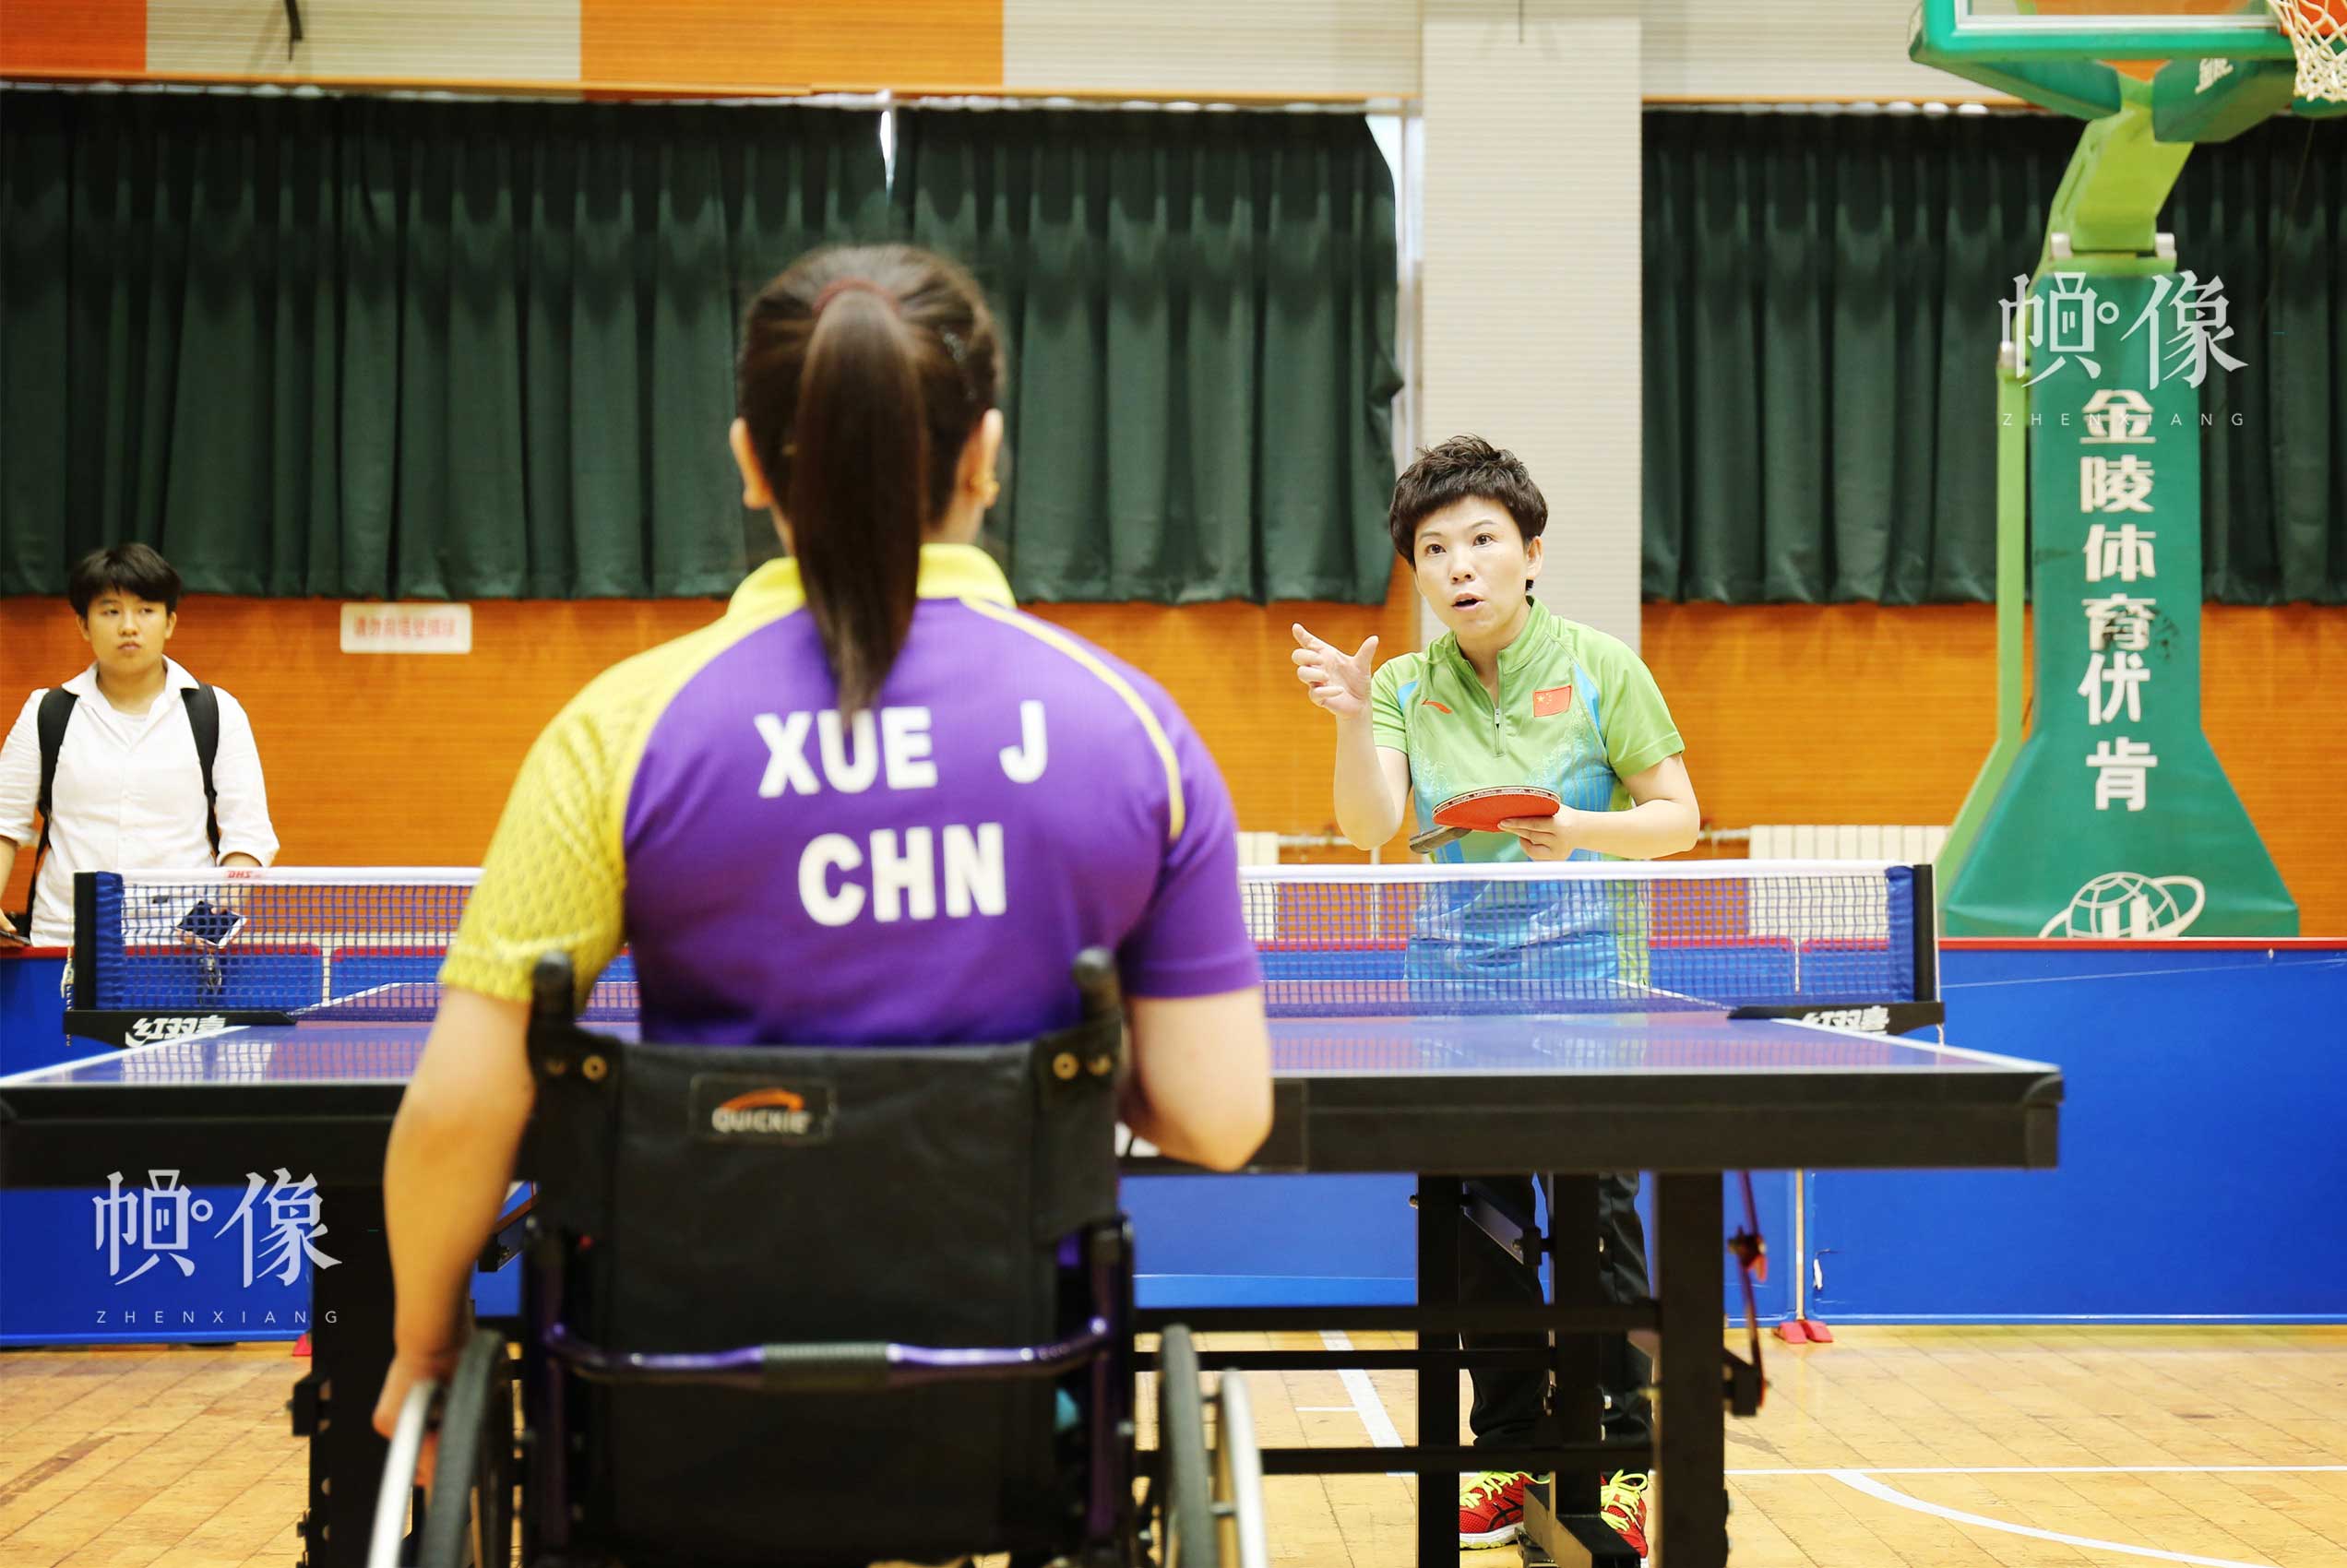 2017年8月10日，第七屆殘疾人健身周推廣日活動在京舉行。圖為鄧亞萍在活動現場指導殘疾人女乒選手薛娟打球。中國網記者 王夢澤 攝